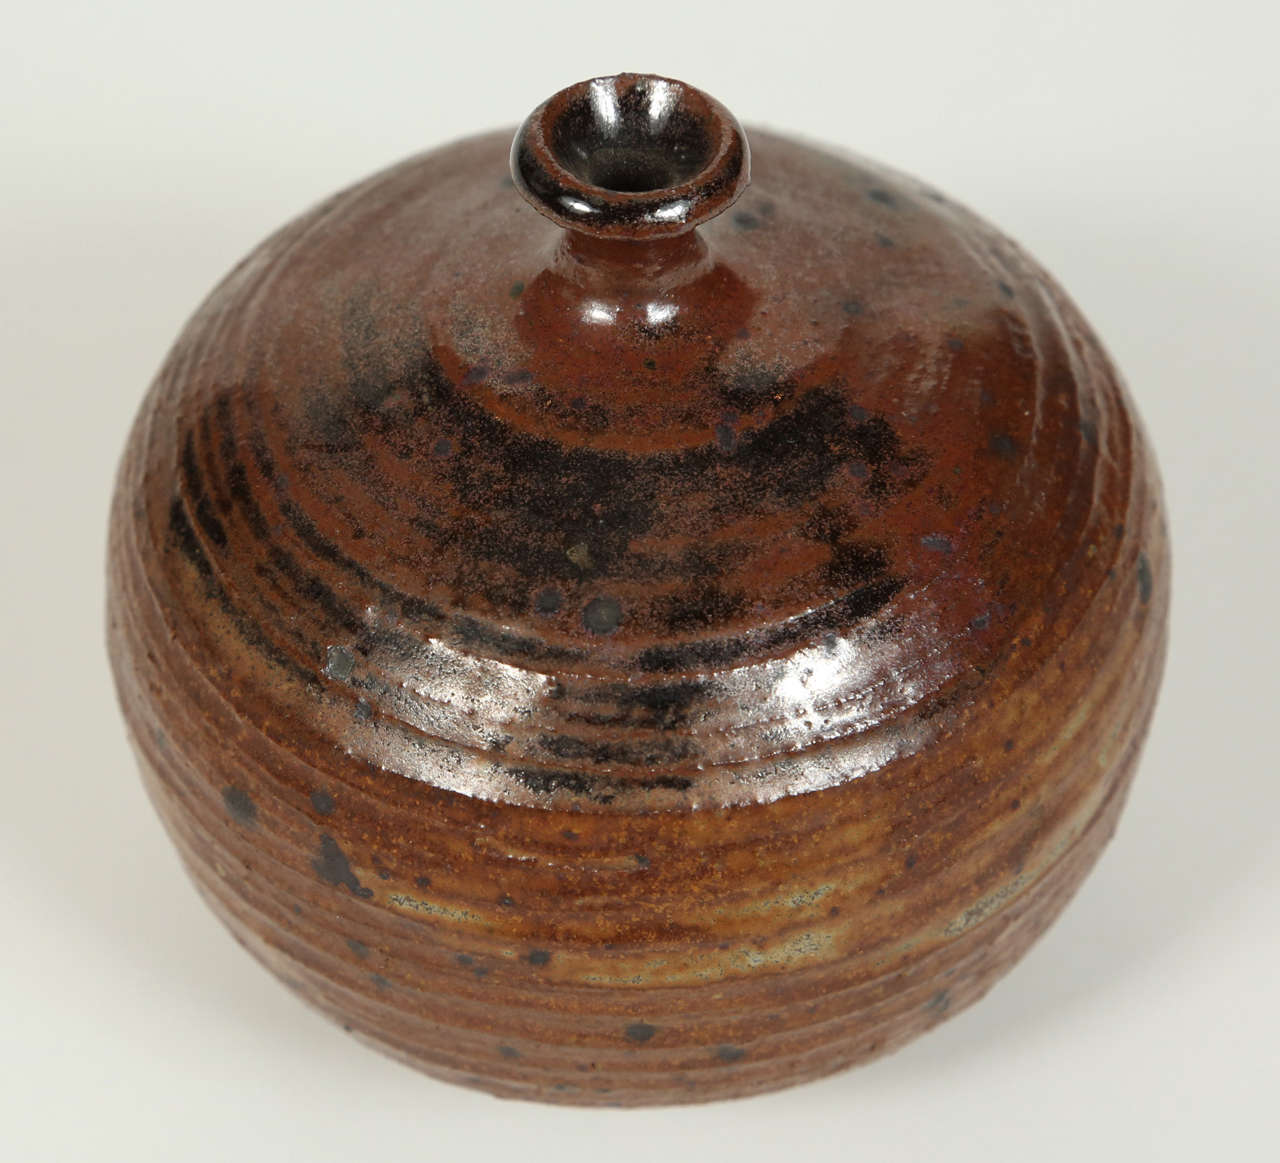 Small brown with black speckle design vintage vase.